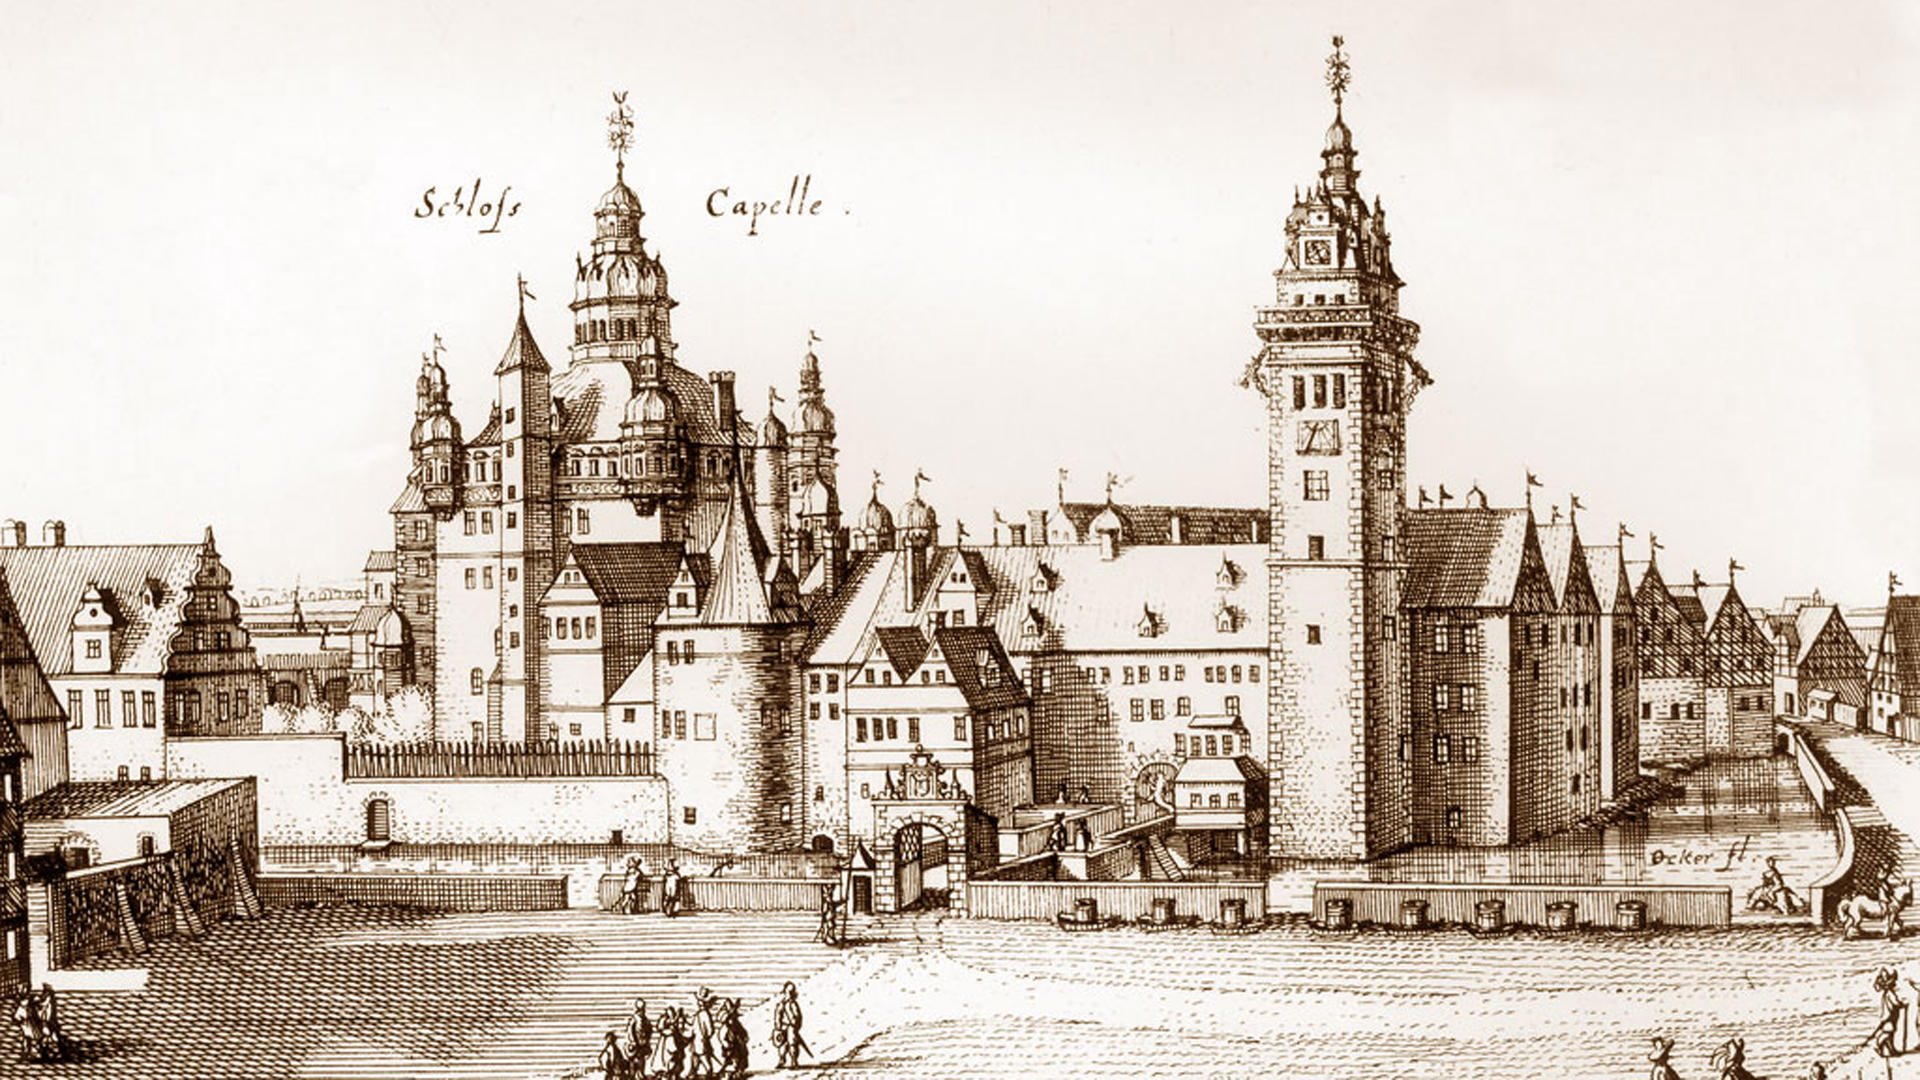 historischer Stich vom Schloss Wolfenbüttel von Osten, nach C.M. Merian, 1654